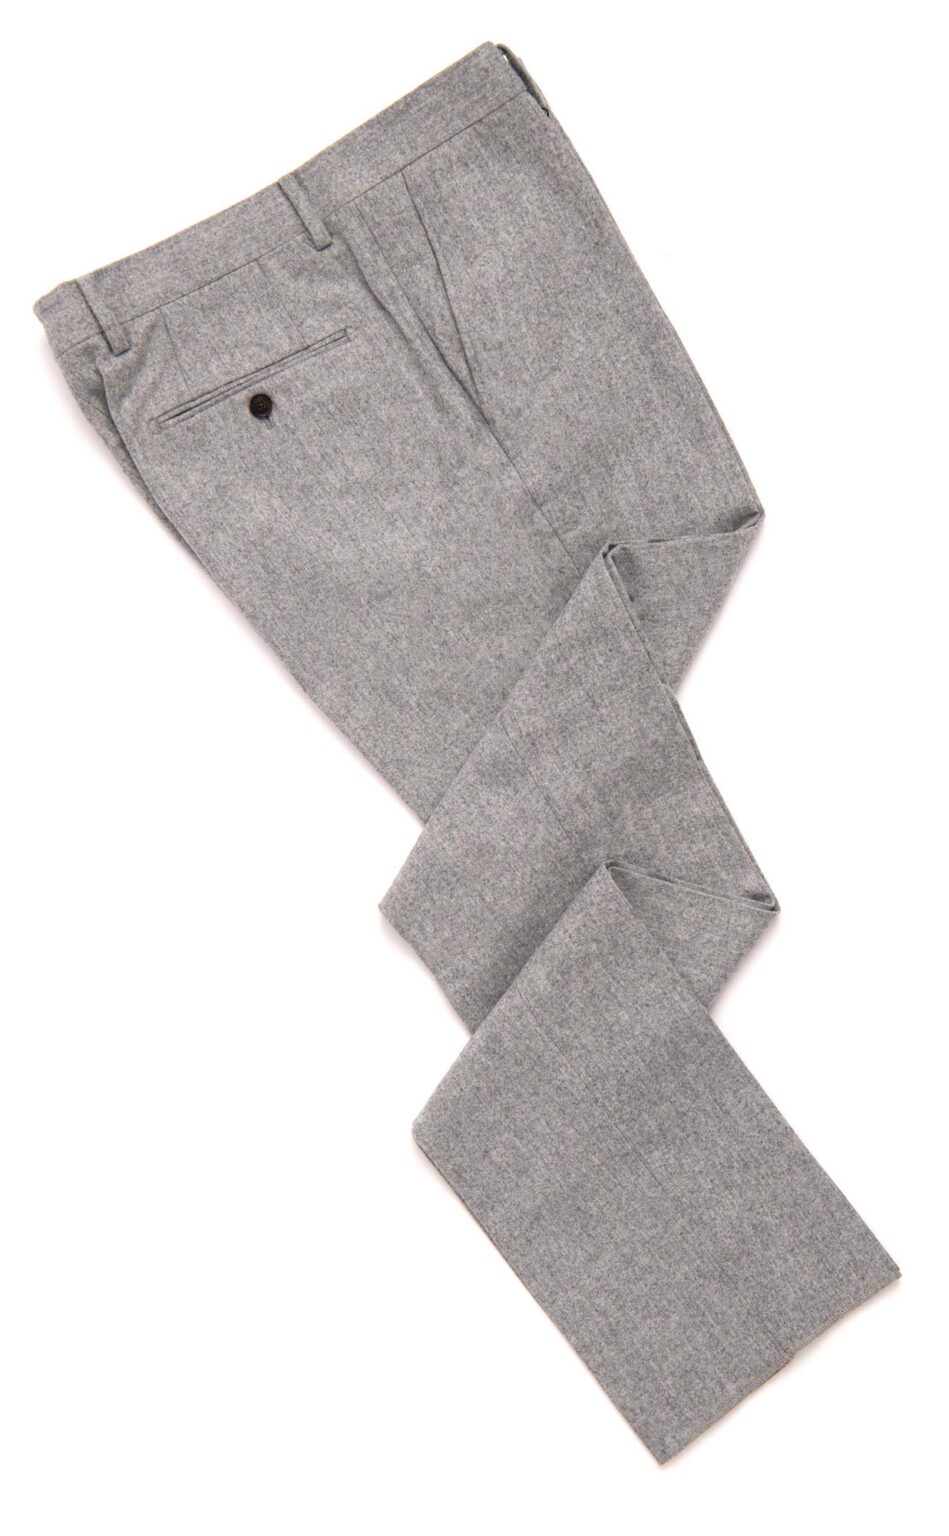 Flannel Trousers at Spier & Mackay – Menswear Musings